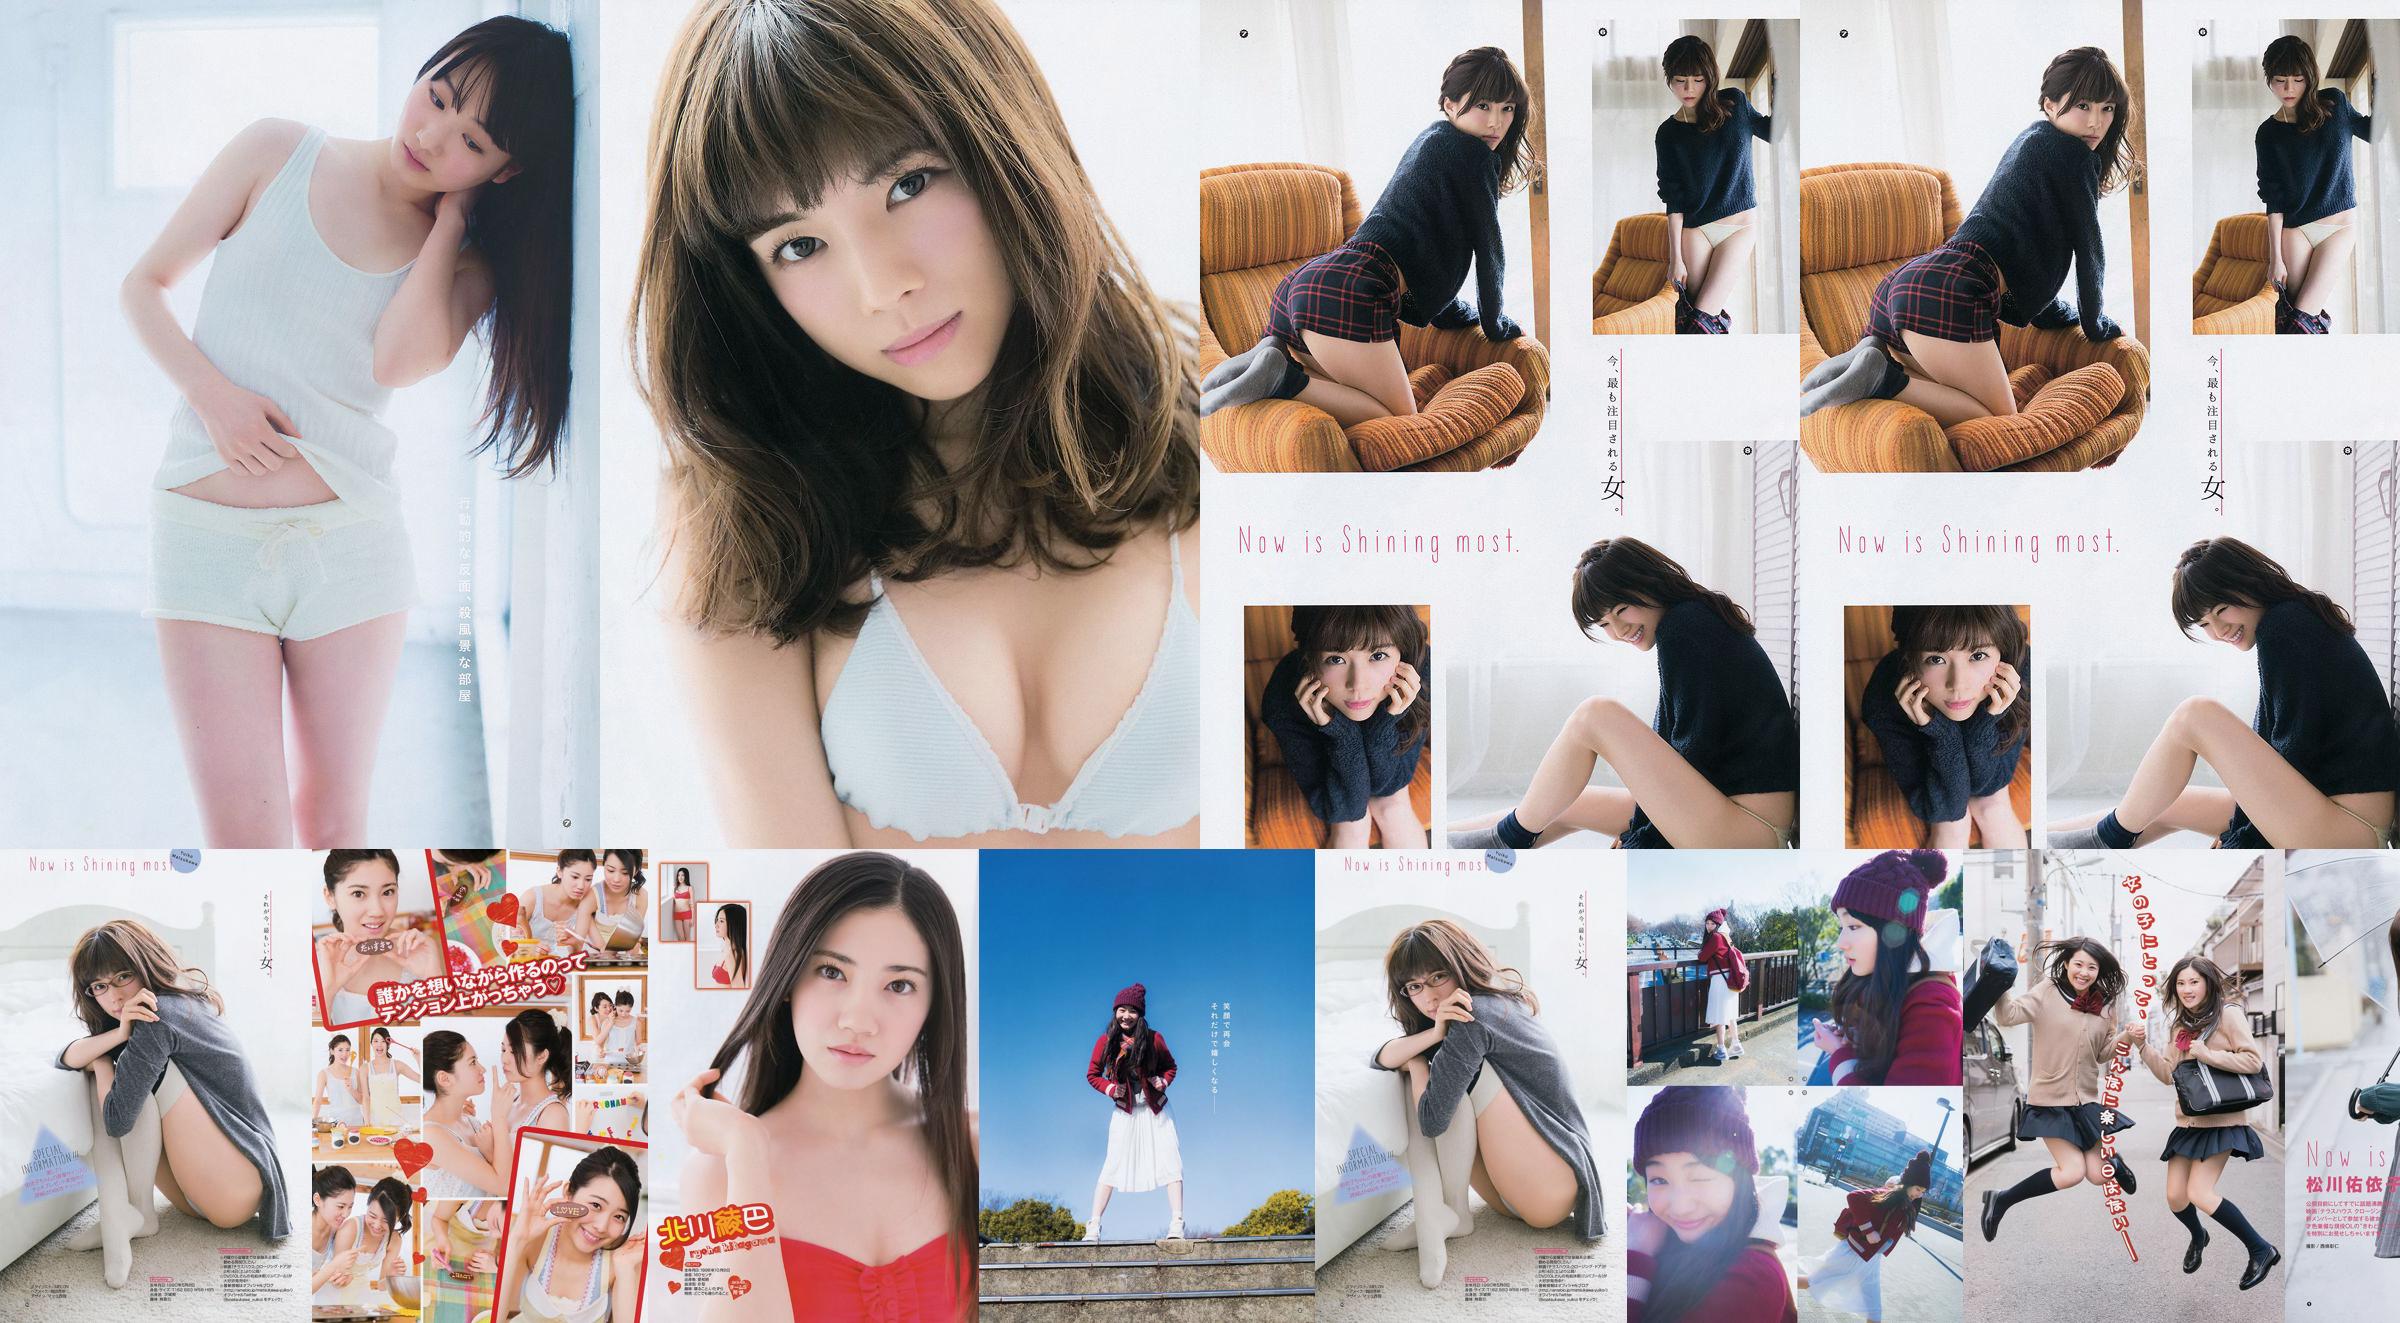 [Young Gangan] Ryoha Kitagawa Ami Miyamae Yuiko Matsukawa Narumi Akizuki 2015 nr. 04 foto No.616b61 Pagina 5